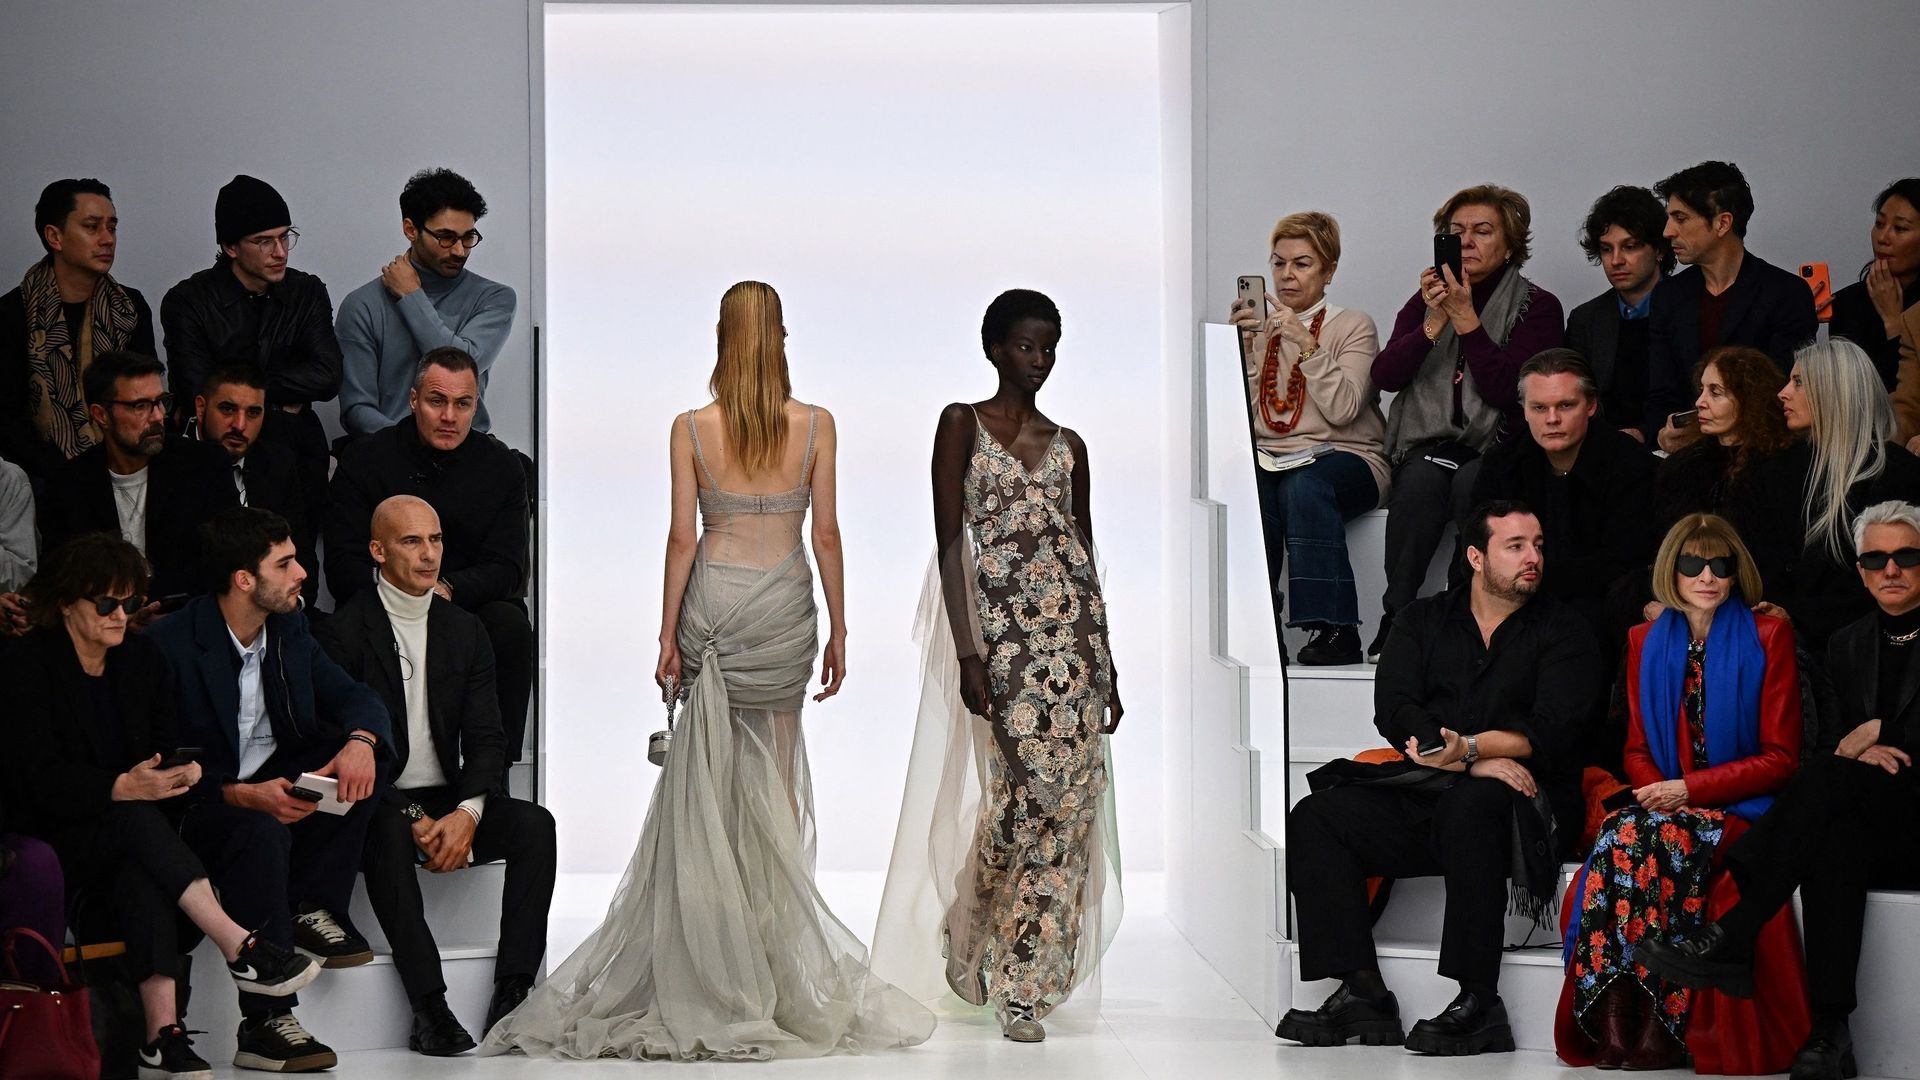 Au dernier jour de la Semaine parisienne de la haute couture, Fendi a présenté une collection tout en lumière et transparence avec de nombreuses robes conçues autour de la lingerie.